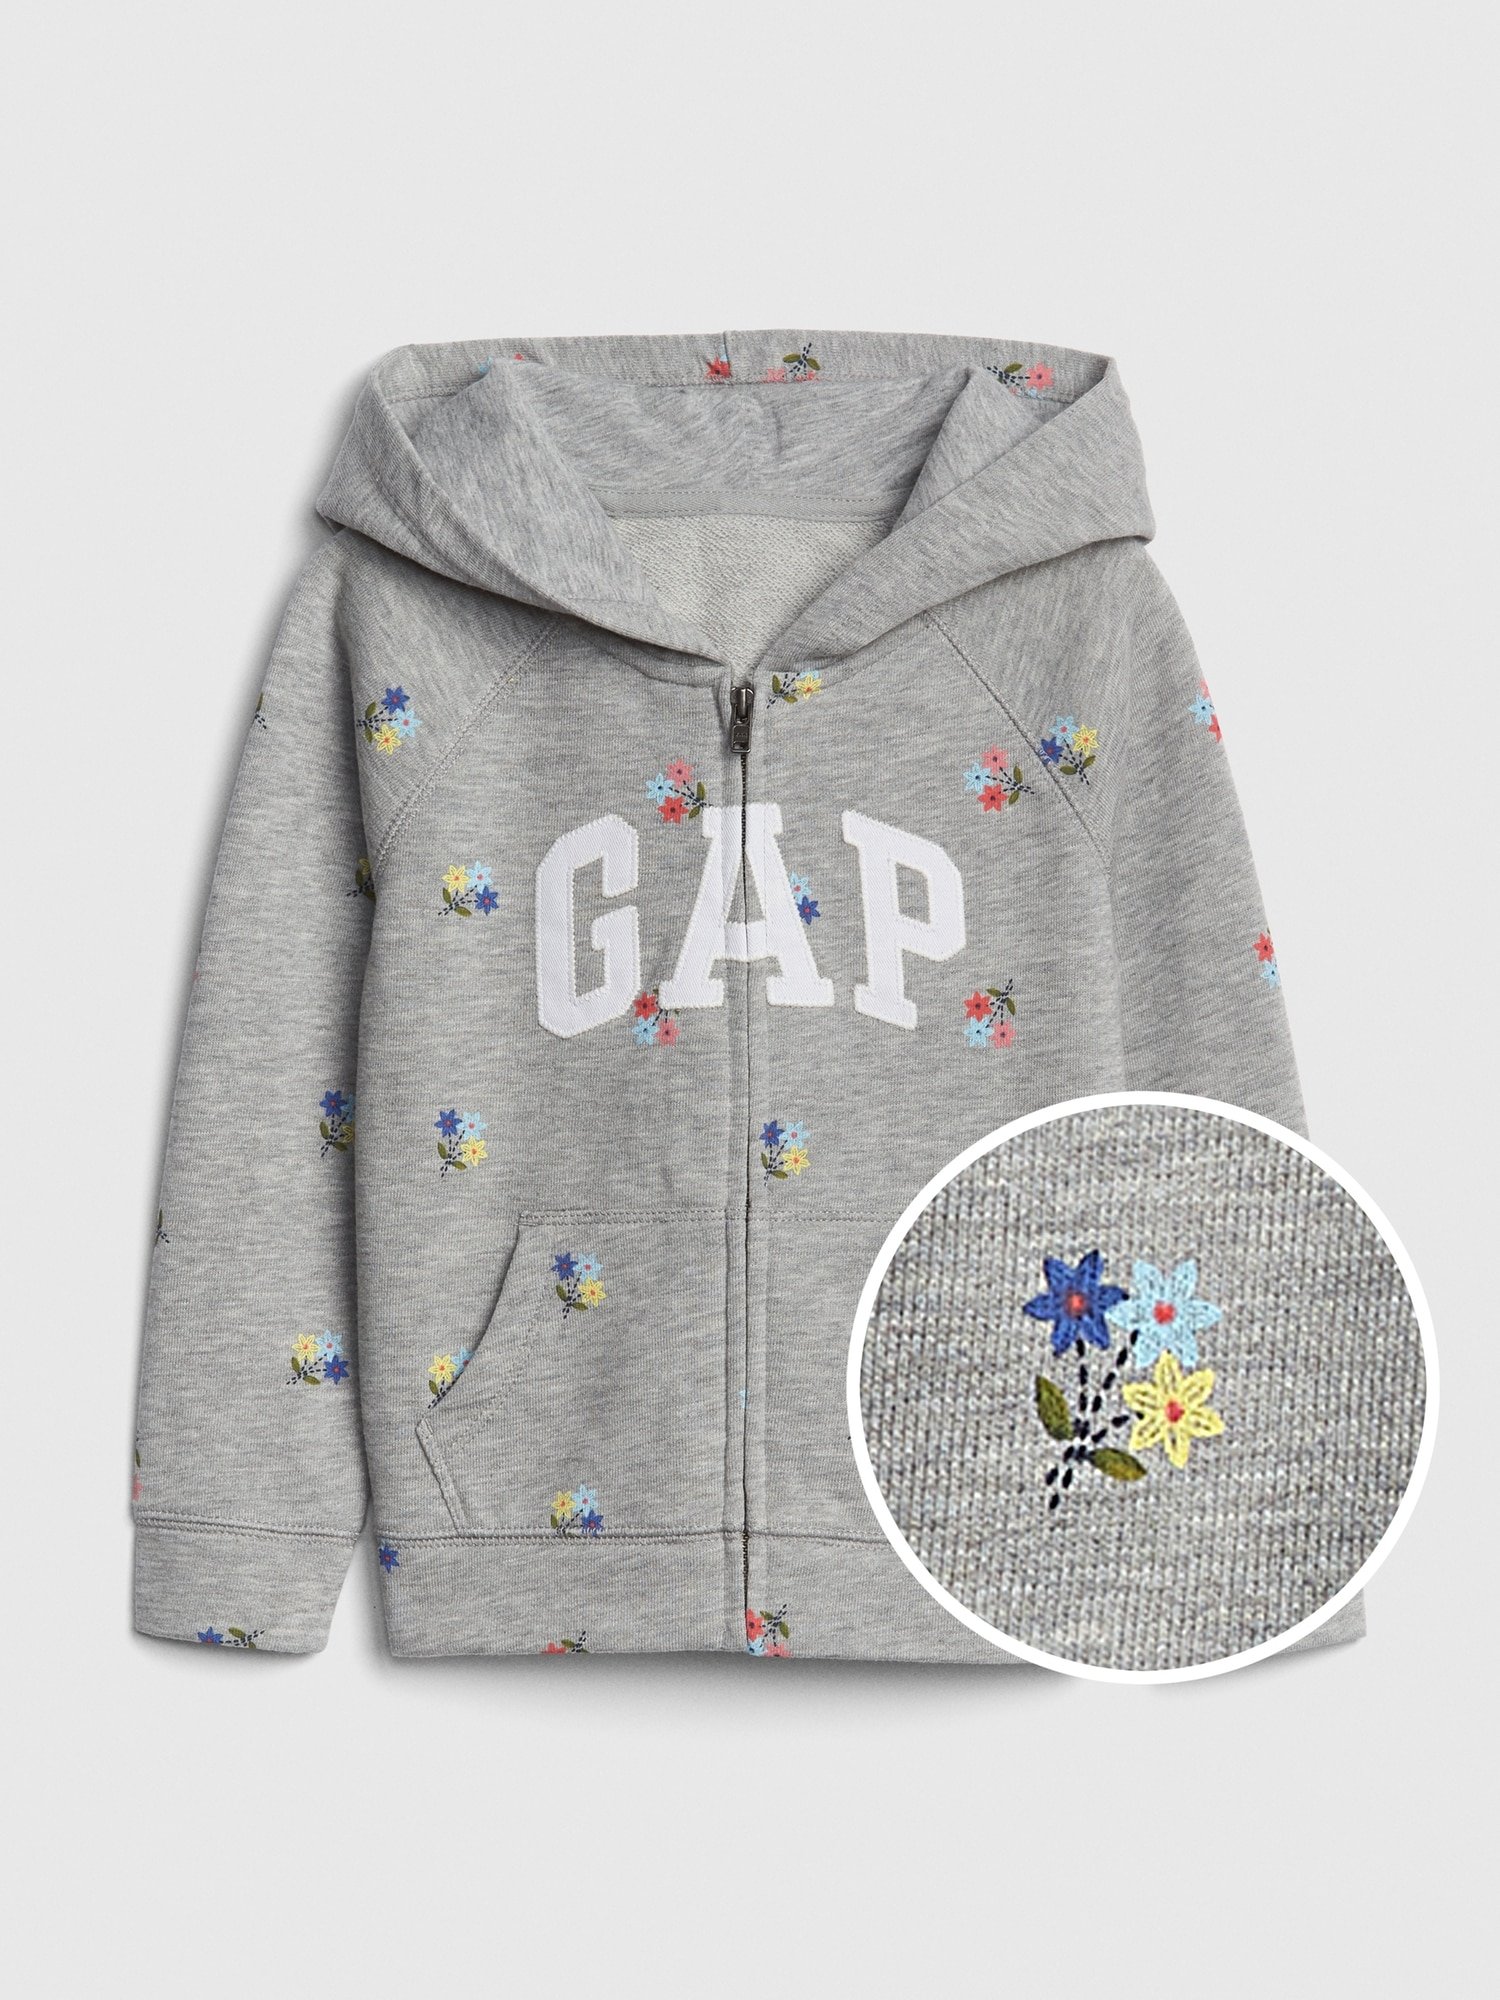 Gap Logo Çiçek Desenli Sweatshirt product image